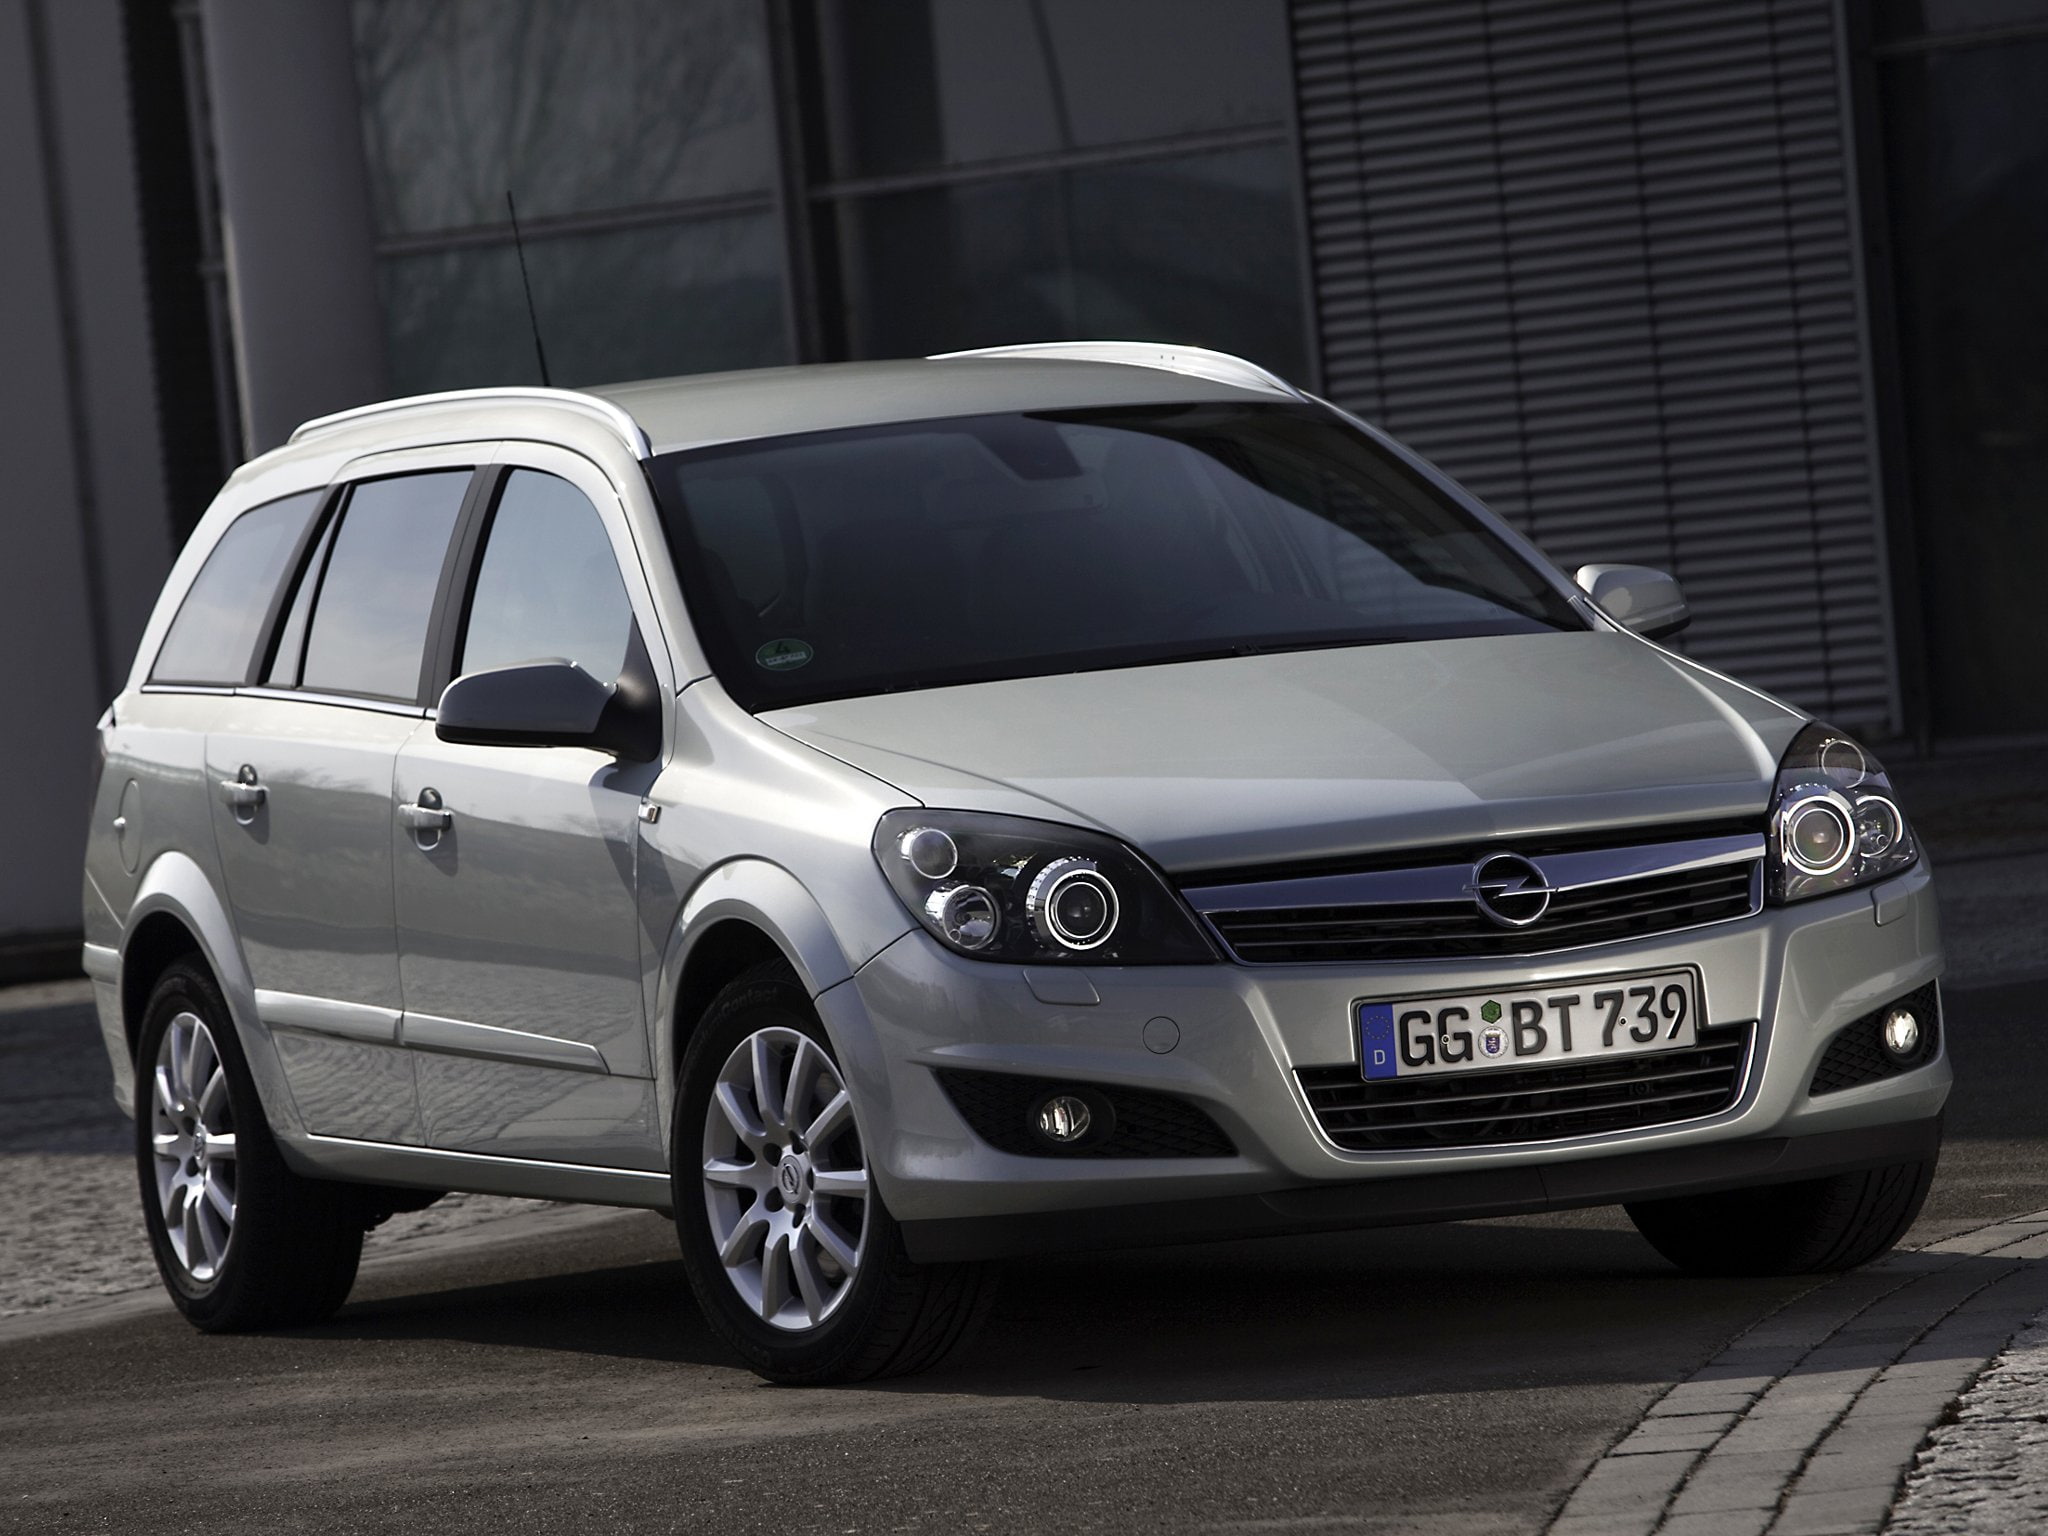 Купить б у opel. Opel Astra h 2007 универсал. Opel Astra Family универсал. Opel Astra Caravan 2007. Opel Astra h Рестайлинг универсал.